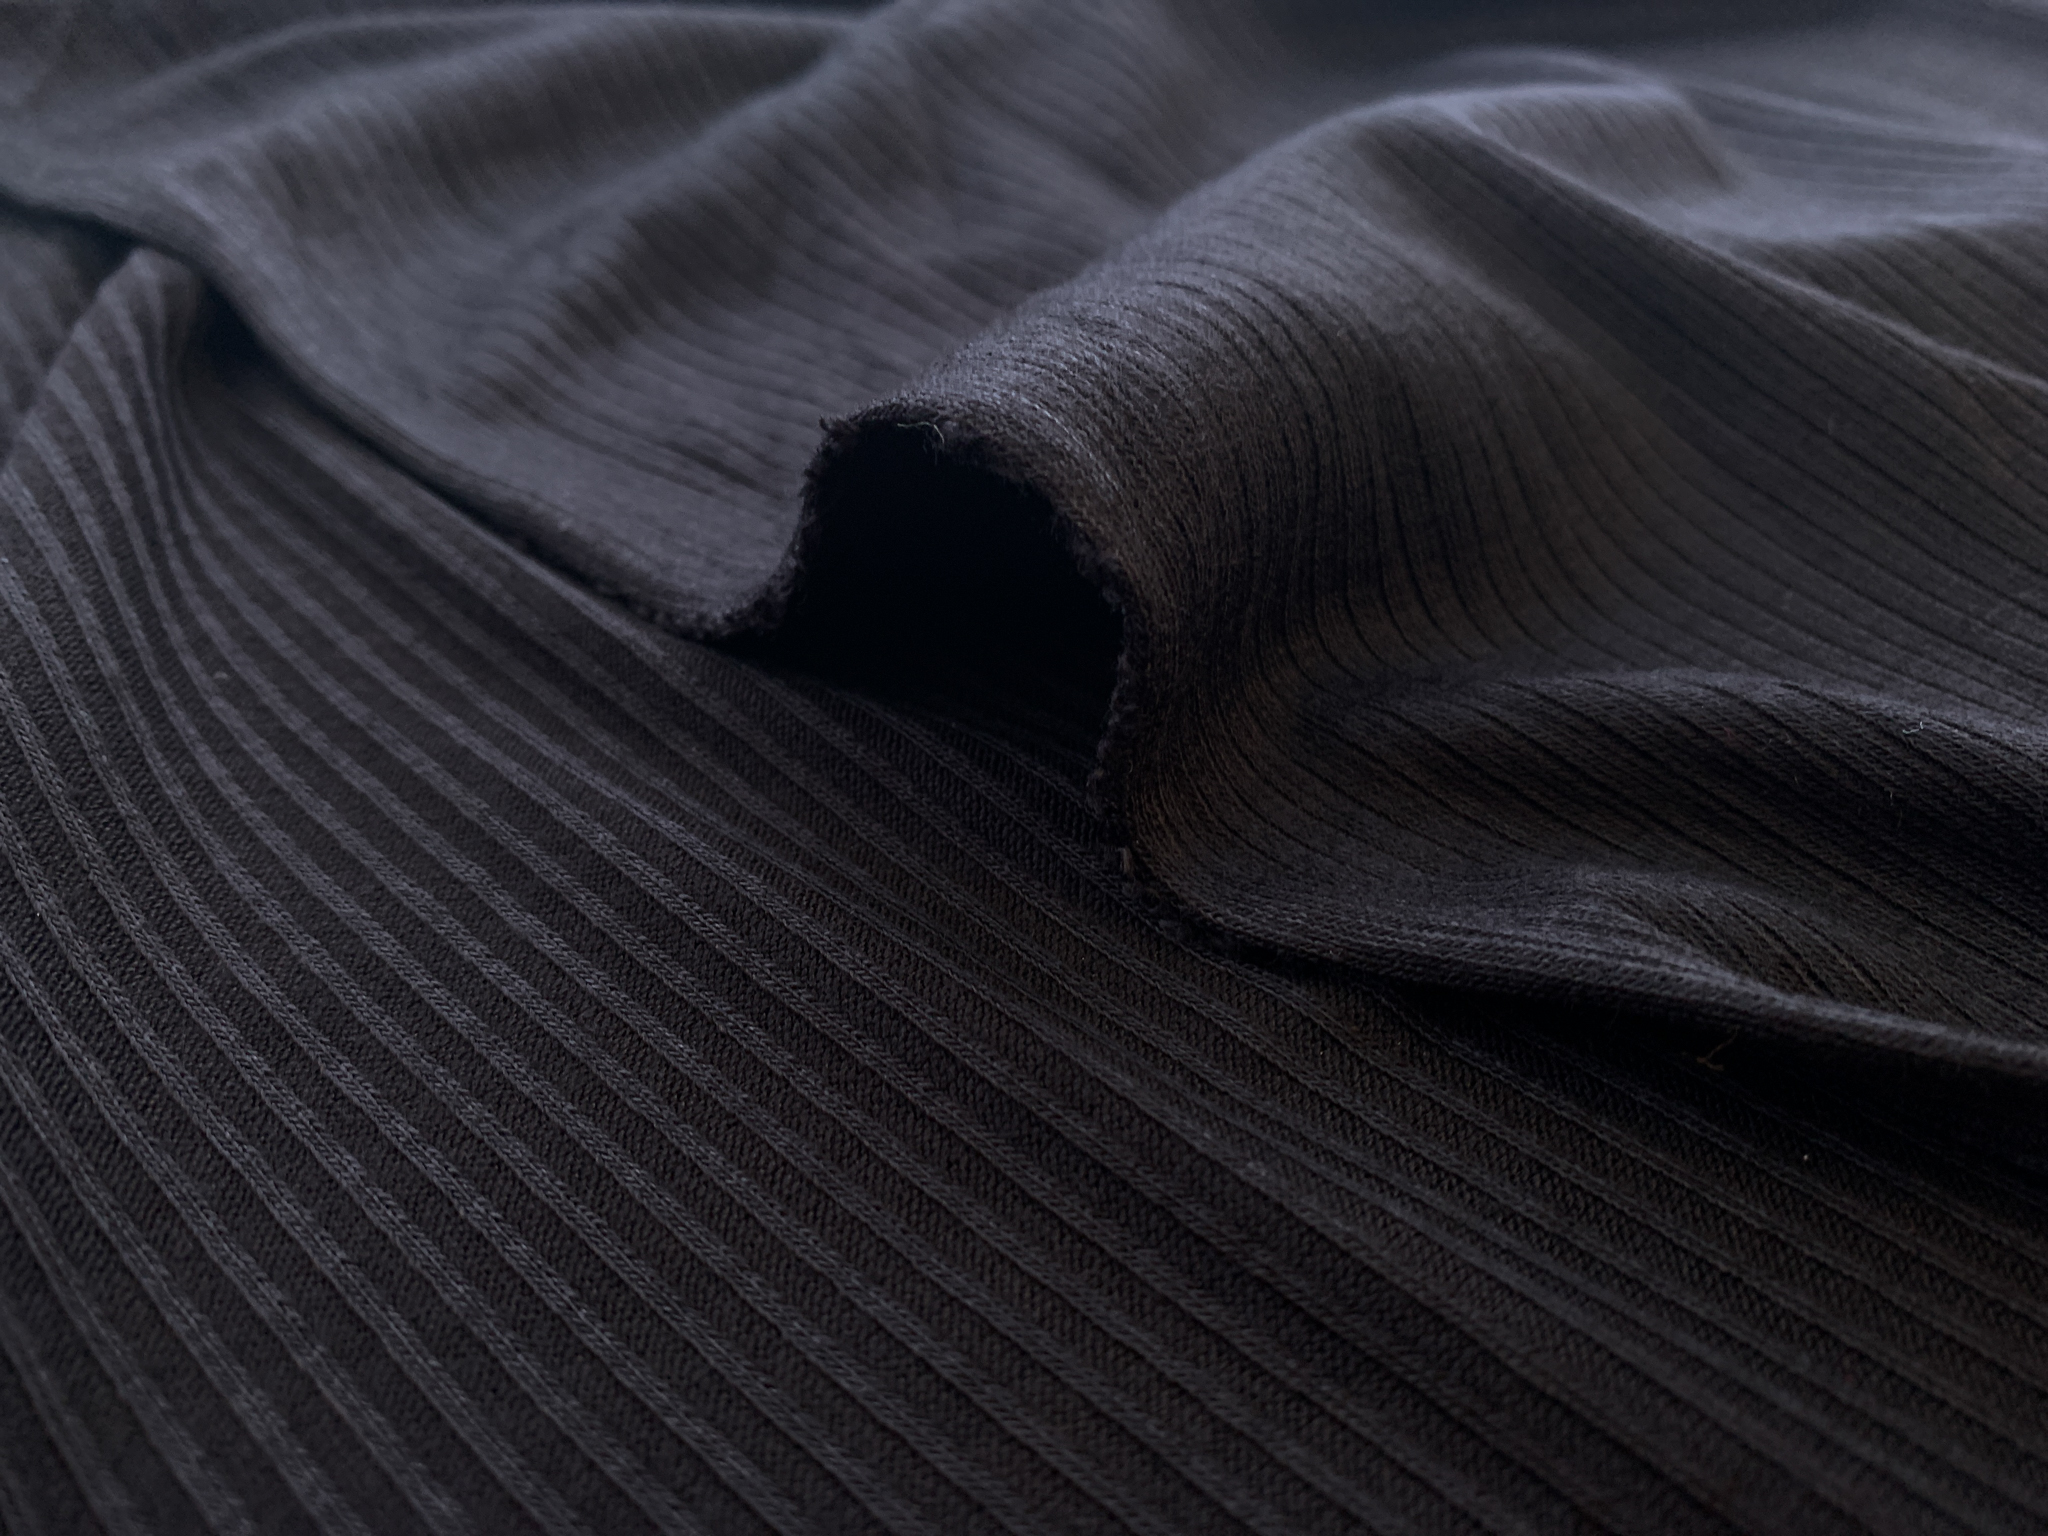 Rayon/Spandex 4x2 Rib Knit - Black - Stonemountain & Daughter Fabrics